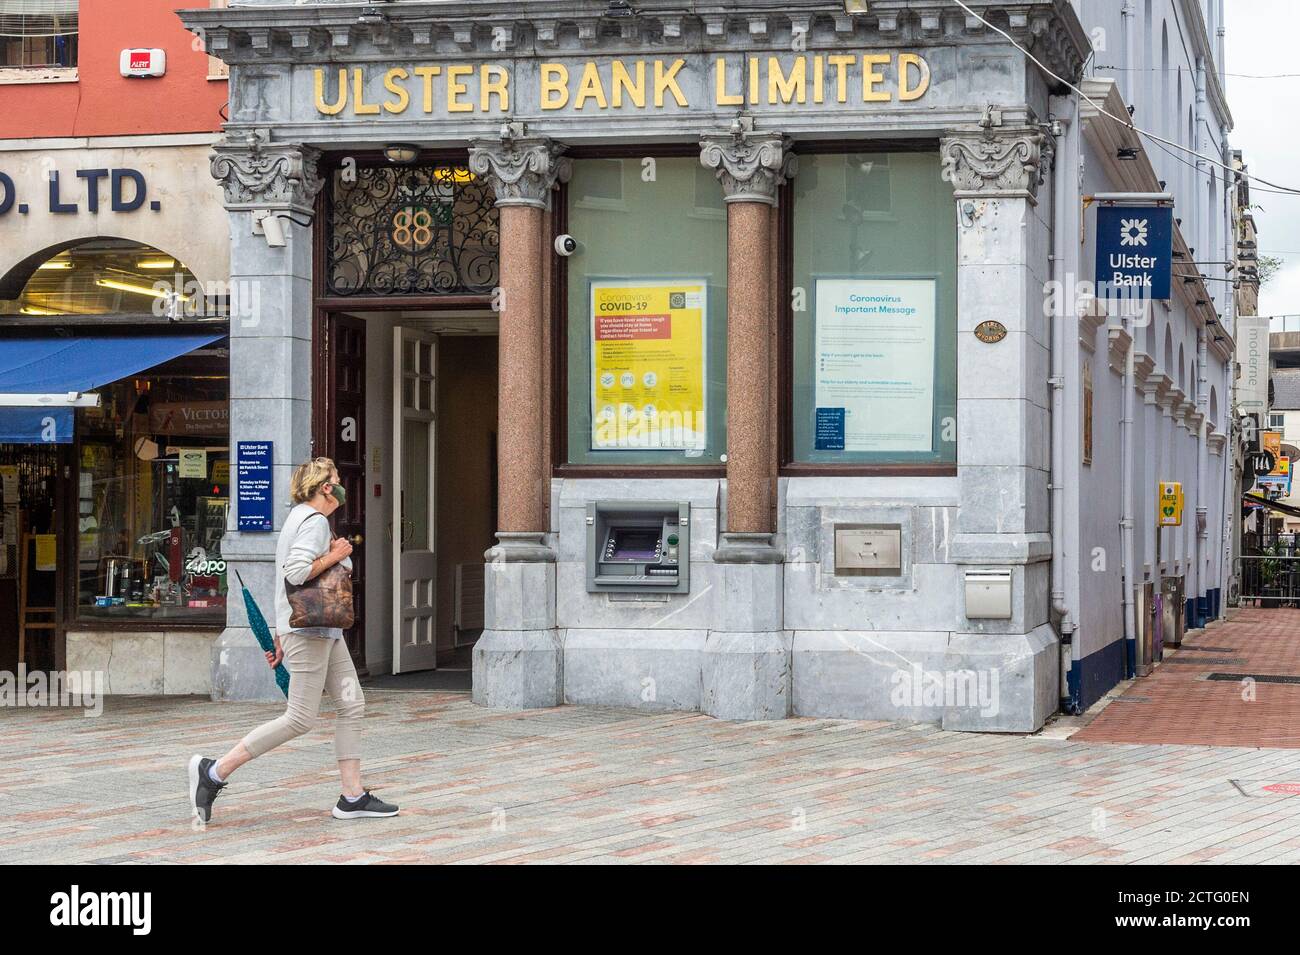 Cork, Irland. September 2020. Die Ulster Bank ist in Irland von einer Schließung bedroht. Die Muttergesellschaft der Bank, Nat West Bank, führt aufgrund eines Verlusts von 276 Millionen Euro, der auf COVID-19 zurückzuführen ist, eine Überprüfung ihrer irischen Tätigkeit durch. Quelle: AG News/Alamy Live News Stockfoto